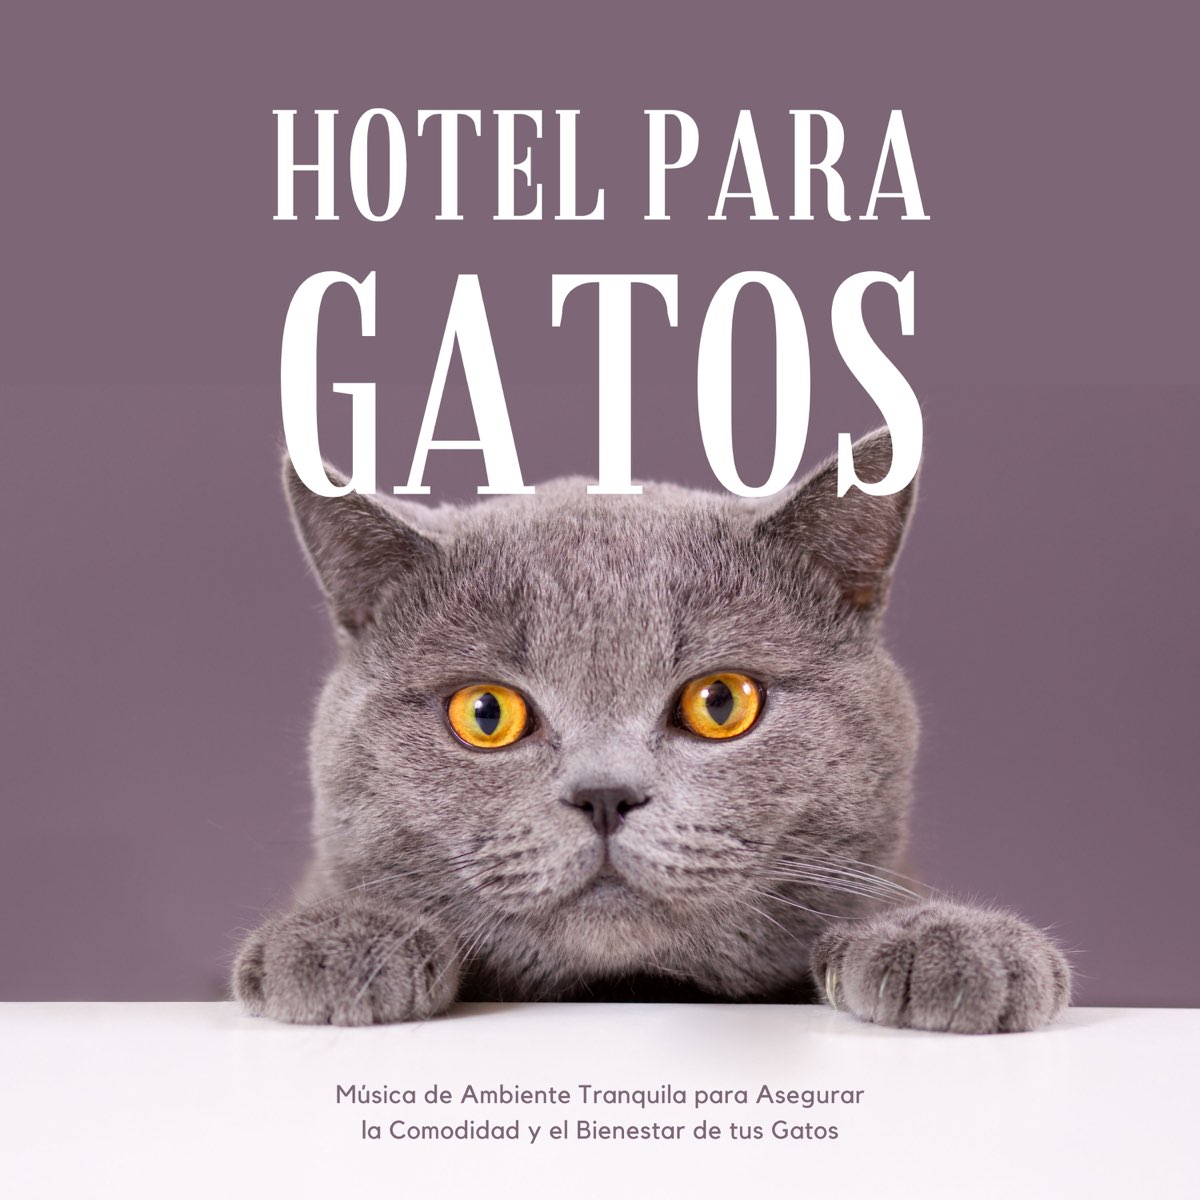 Hotel para Gatos - Música de Ambiente Tranquila para Asegurar la Comodidad  y el Bienestar de tus Gatos - Album by Private Cabana - Apple Music